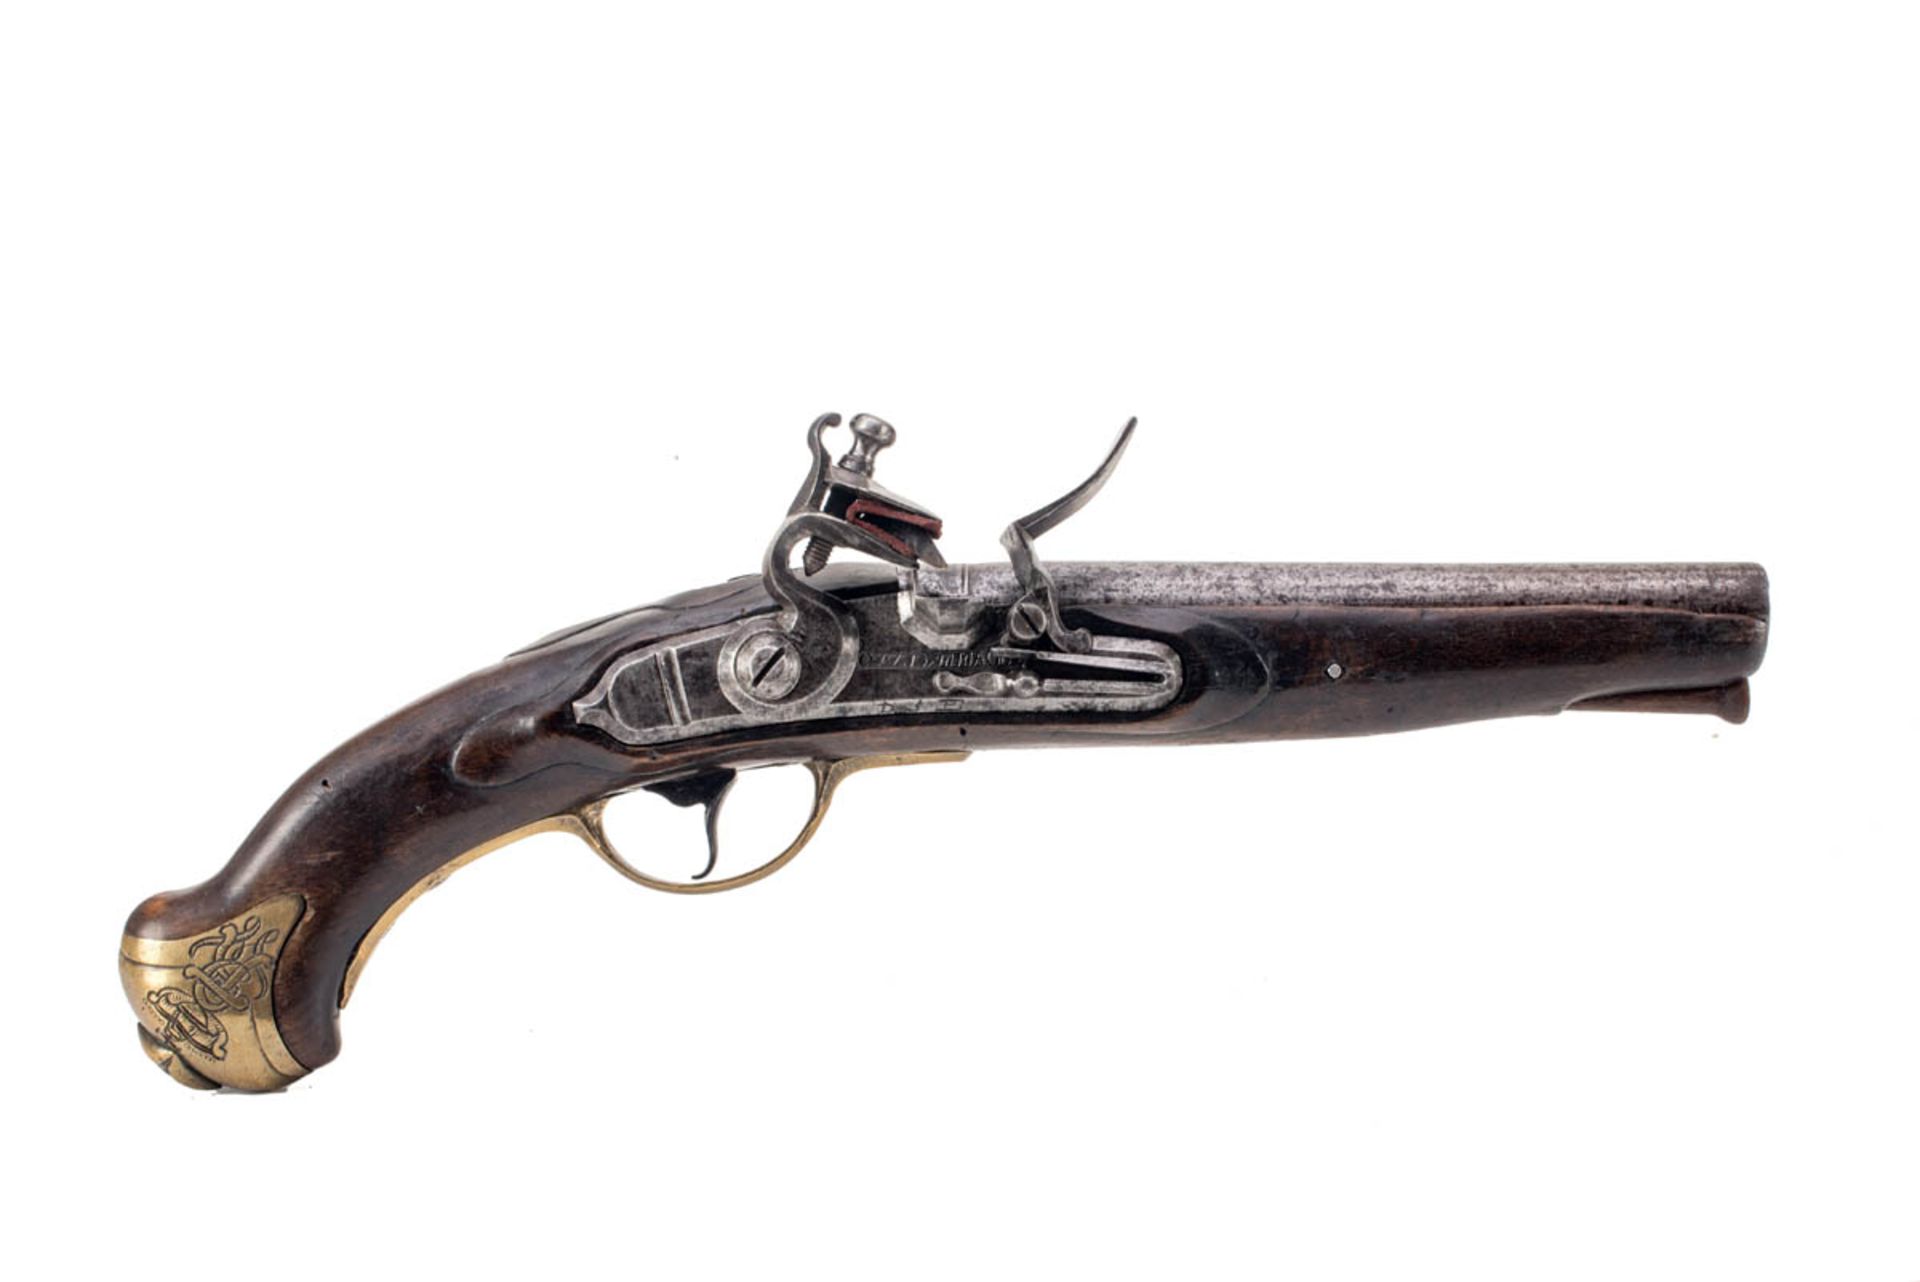 Kavalleriepistole, Preussen M 1789Steinschloßpistole, Buchenschäftung. Steinschloß bez. POTSDAMMAGAZ - Bild 3 aus 4